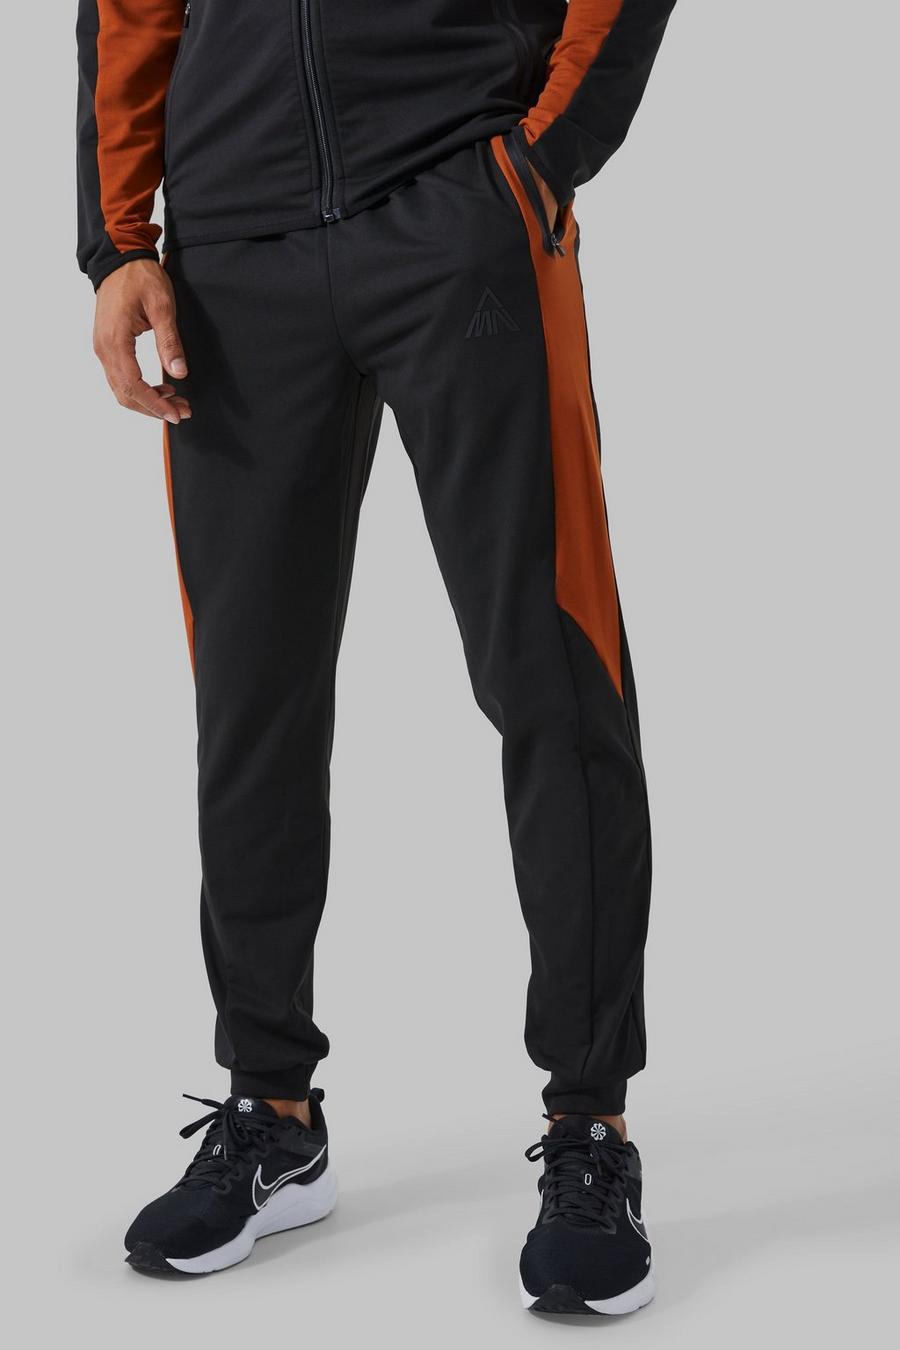 Pantaloni tuta Man Active a blocchi di colore con pannelli, Burnt orange